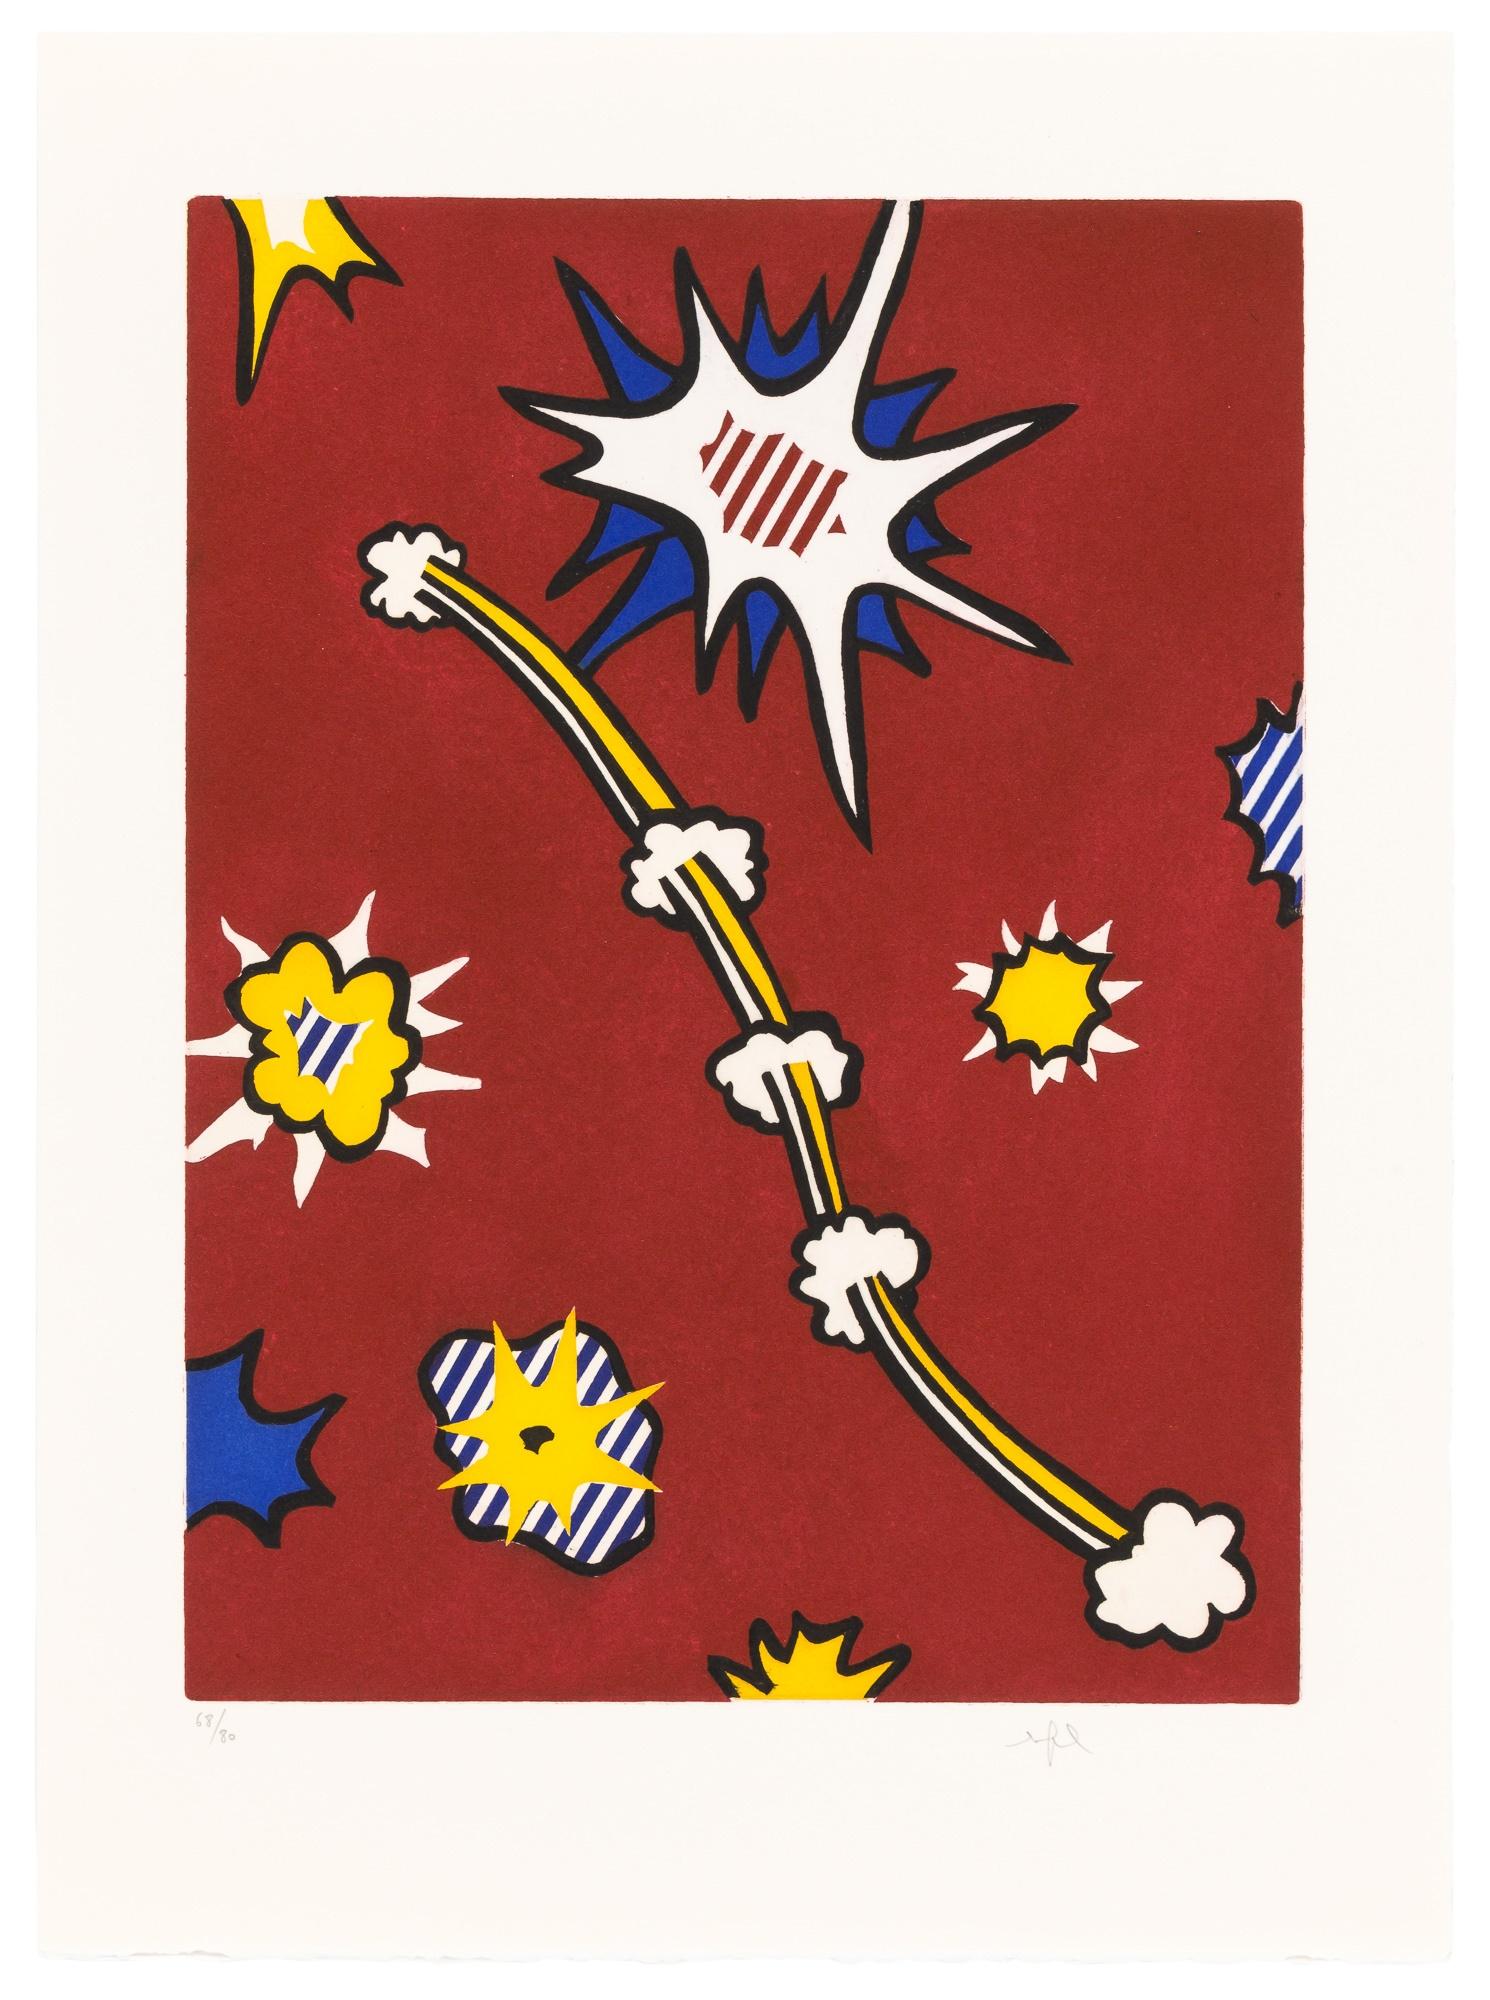 What patterns did Roy Lichtenstein use?